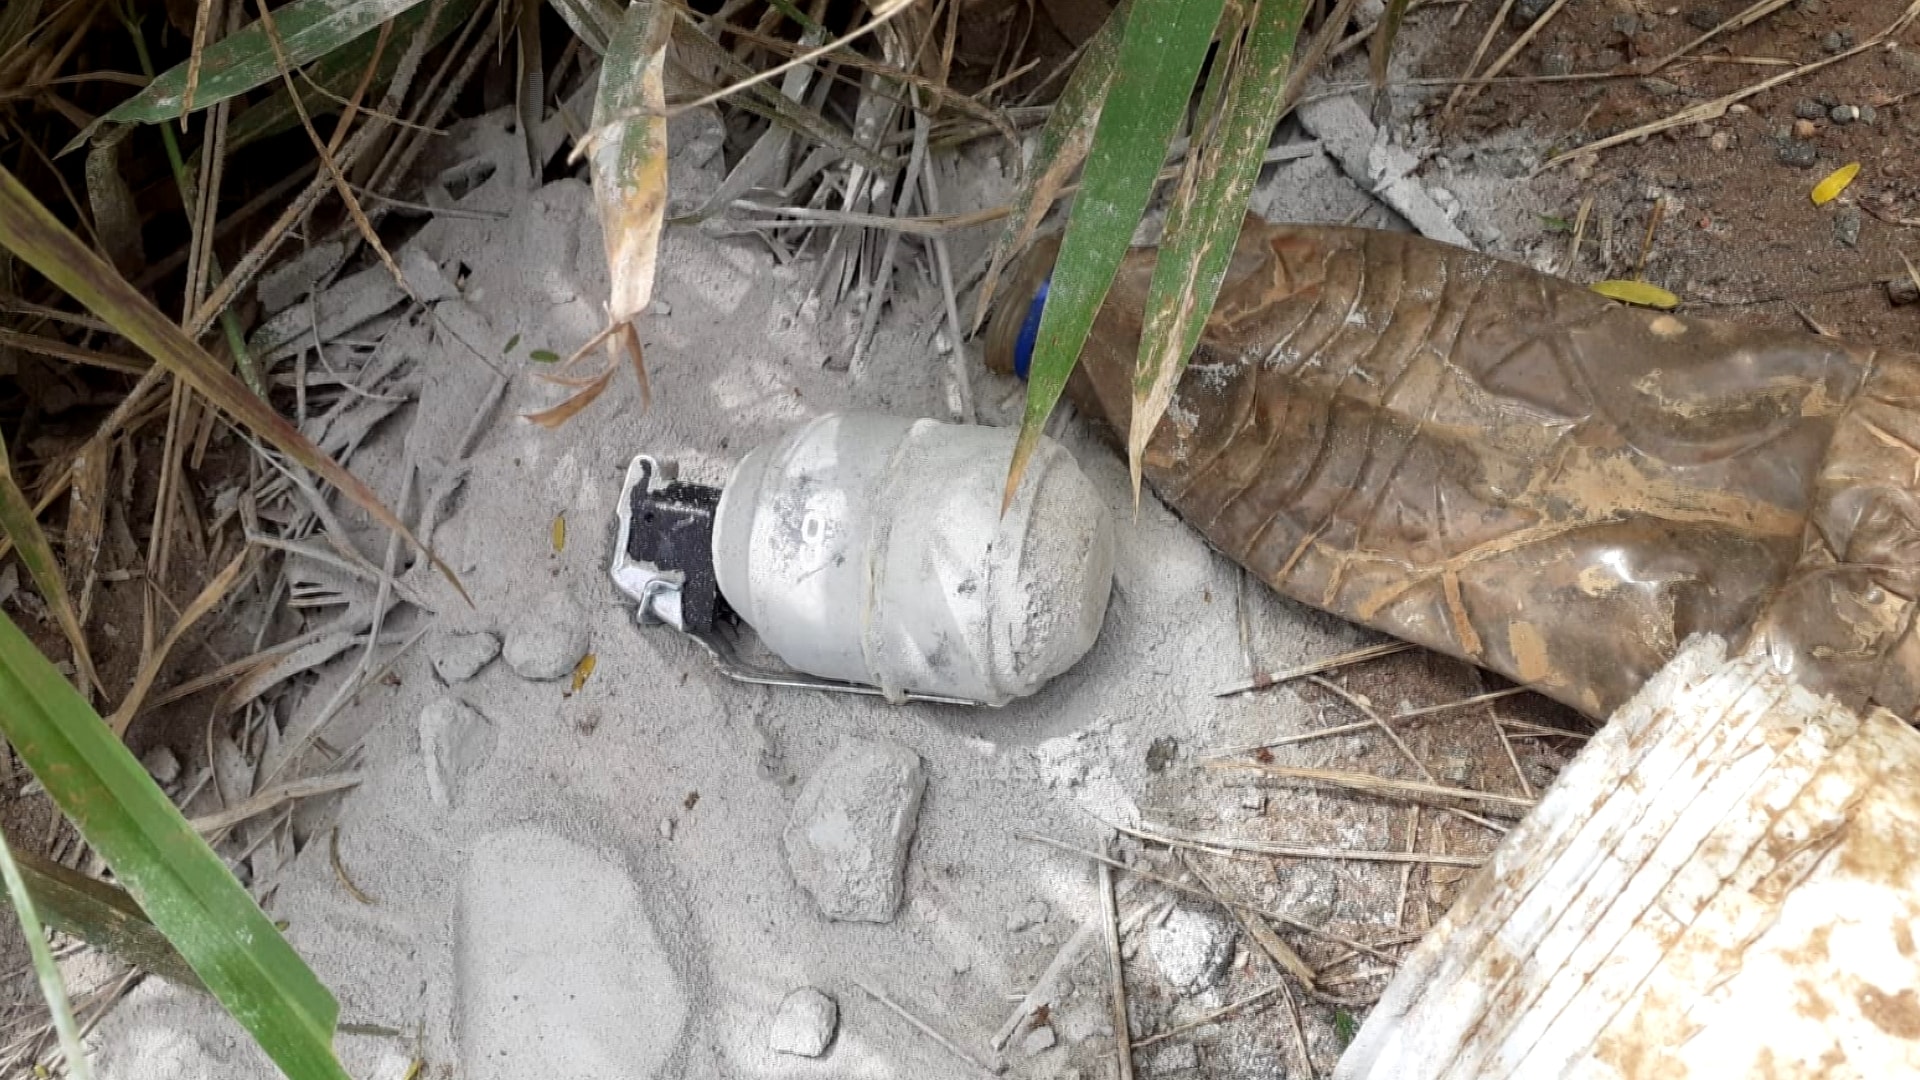 Bombas são encontradas em estrada rural de Araçoiaba da Serra